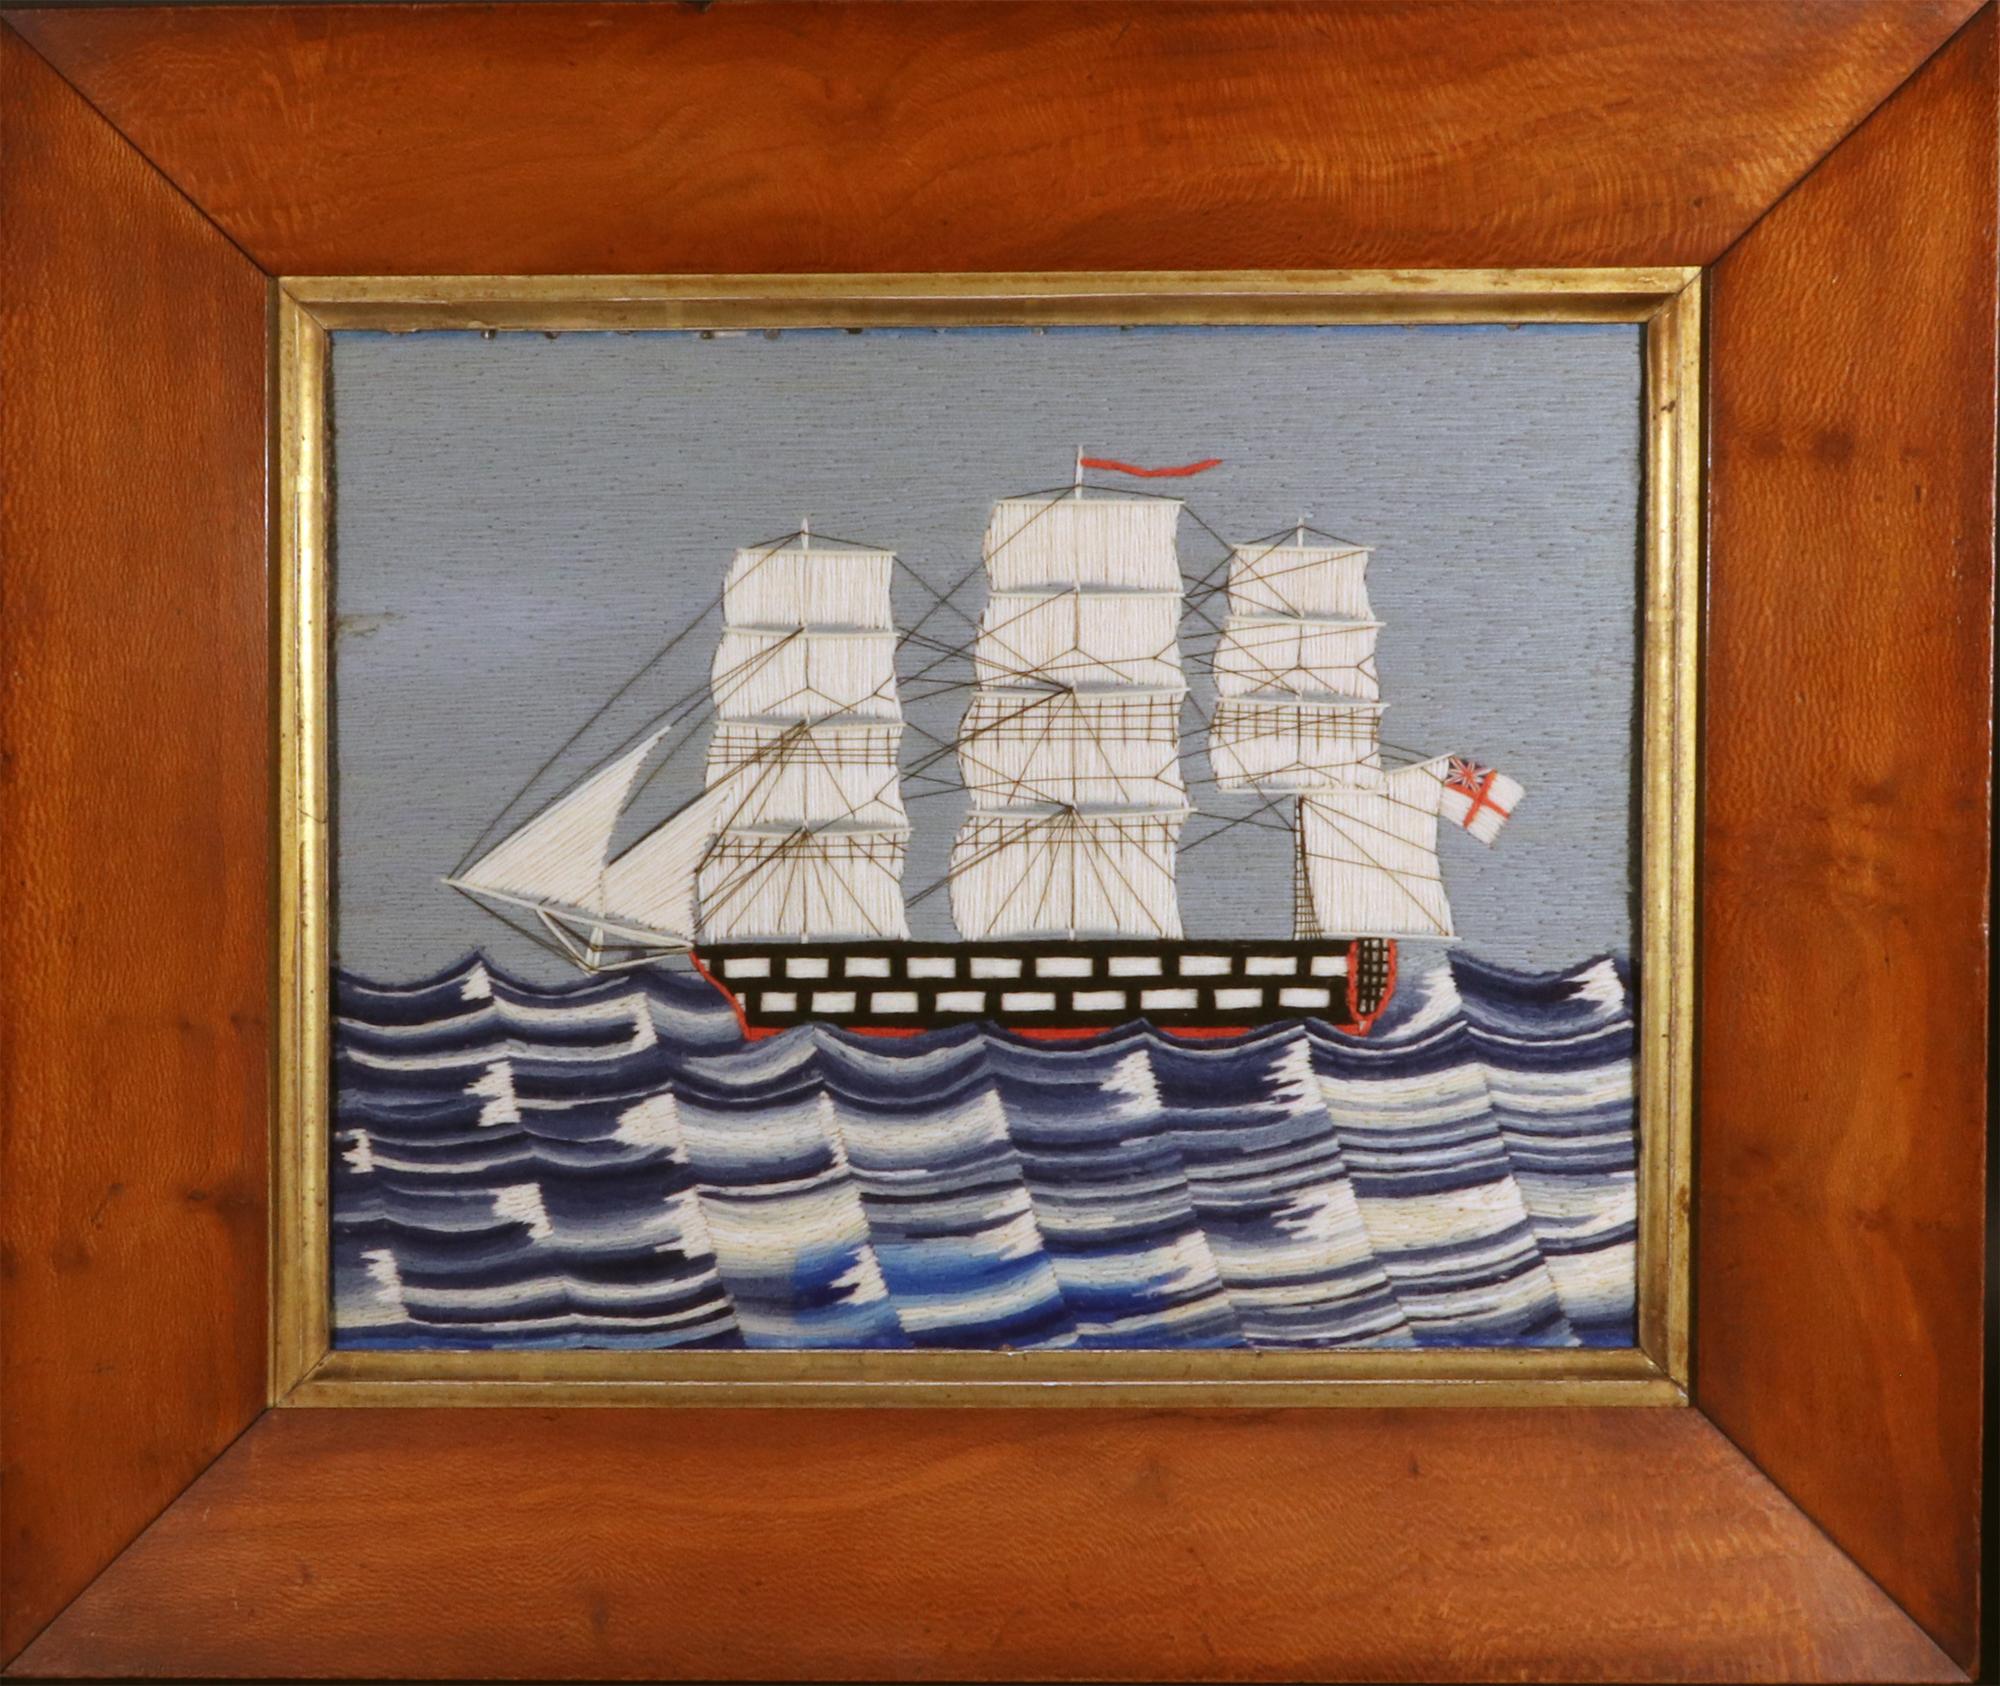 British Sailor's Woolwork of British Royal Navy Ship,
CIRCA 1875

Ein Matrosenwollwerk mit einer Backbordansicht eines zweitklassigen Schiffes der Royal Navy unter vollen Segeln auf einer schön dargestellten kabbeligen See mit weißen Spitzen in